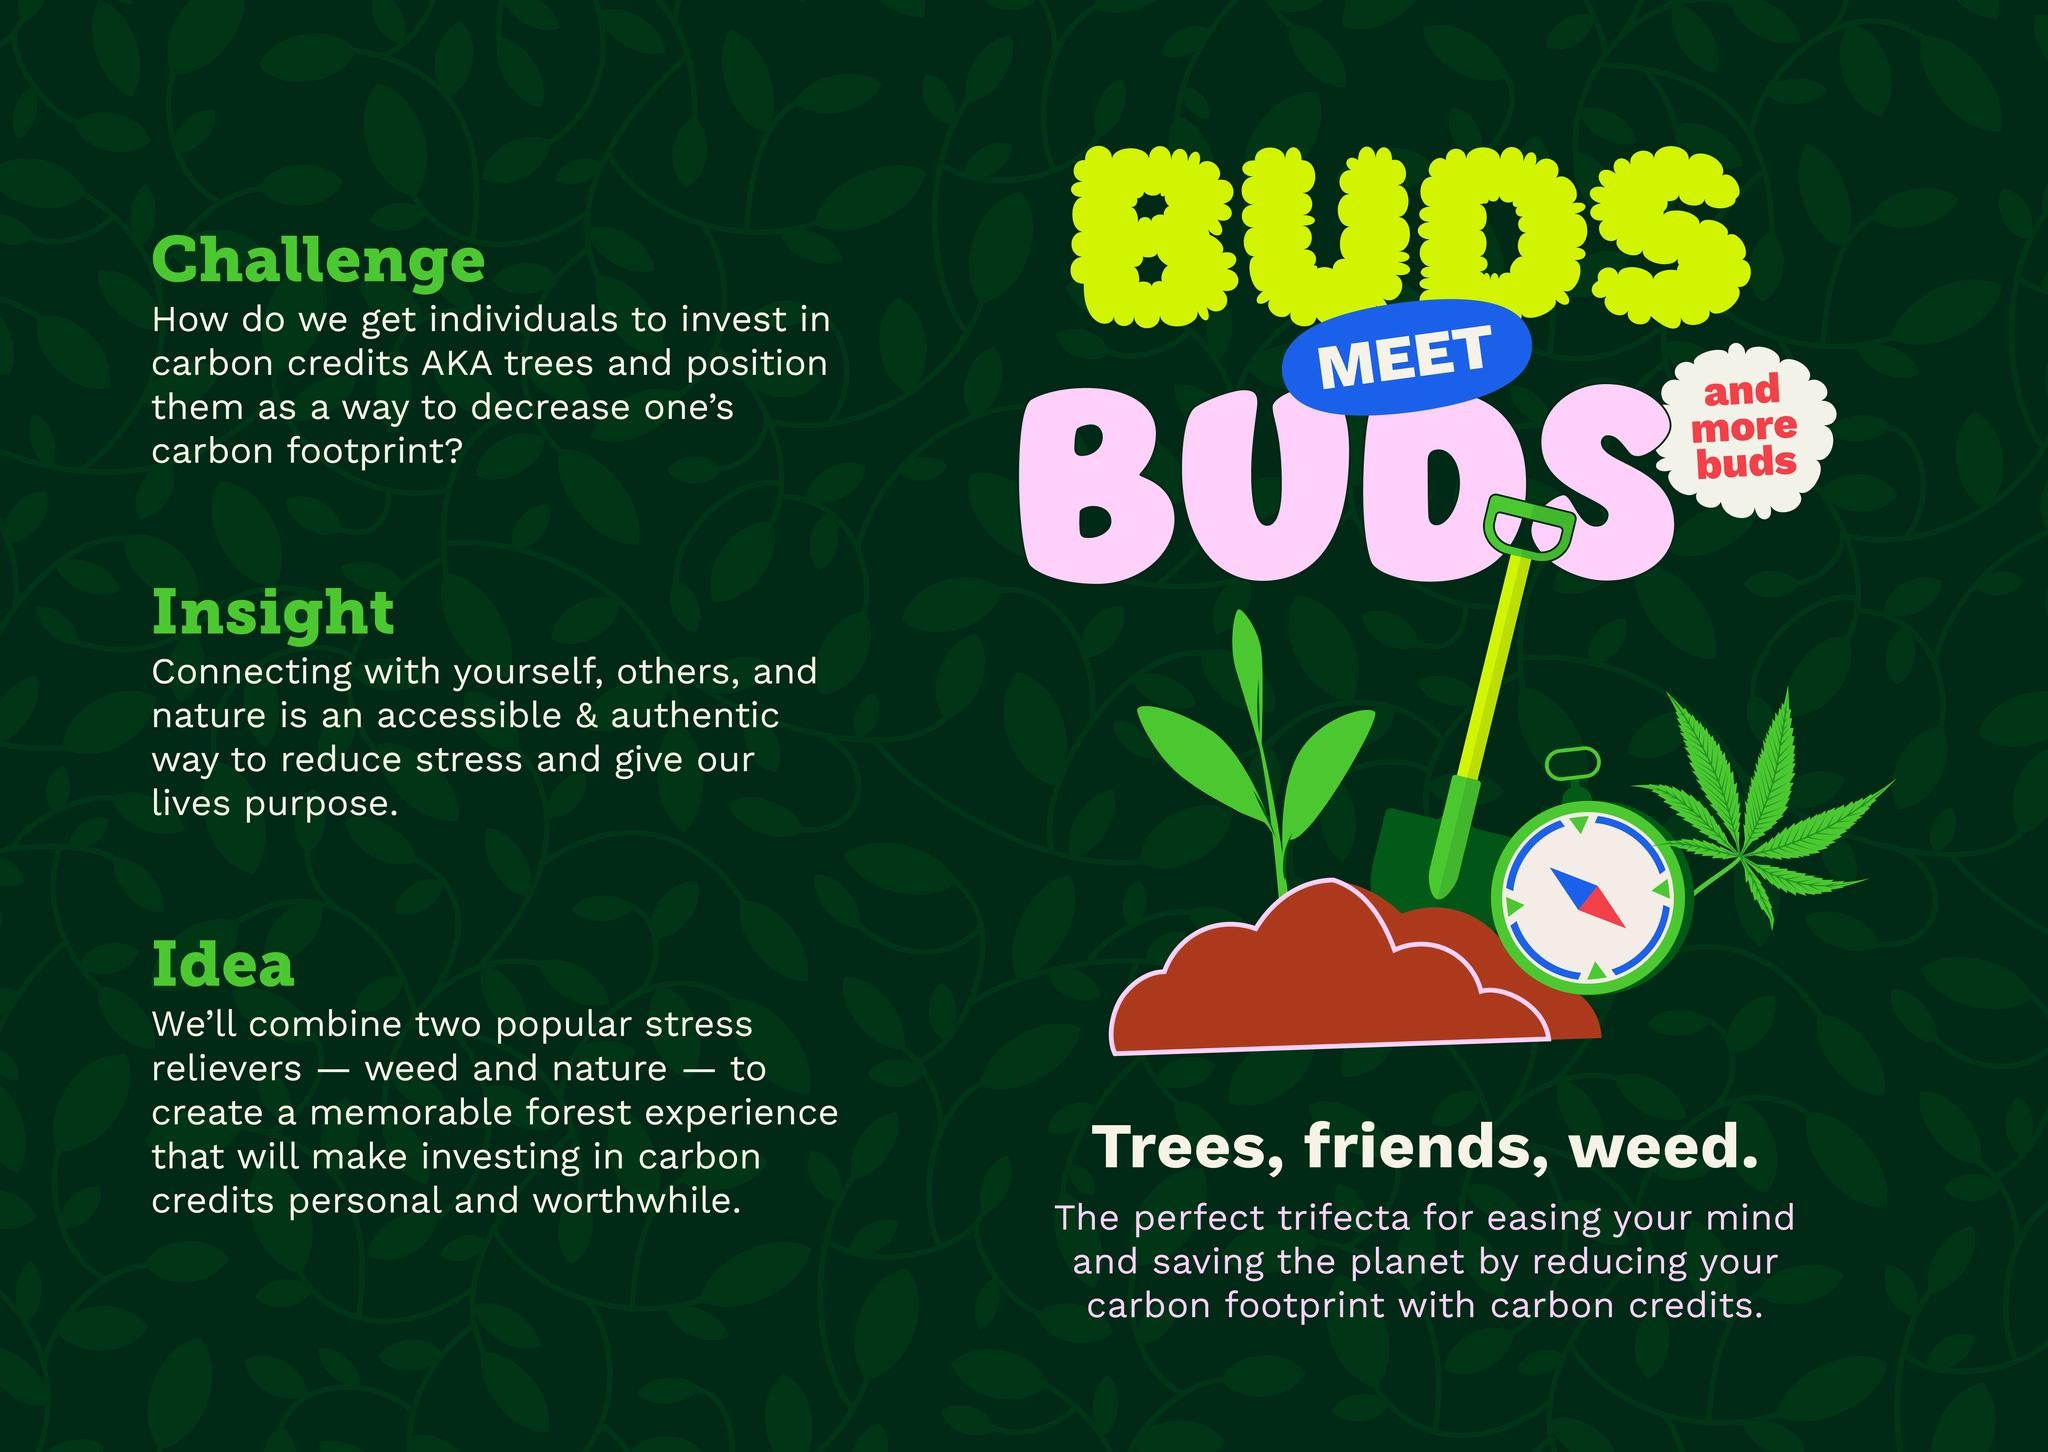 Buds Meet Buds